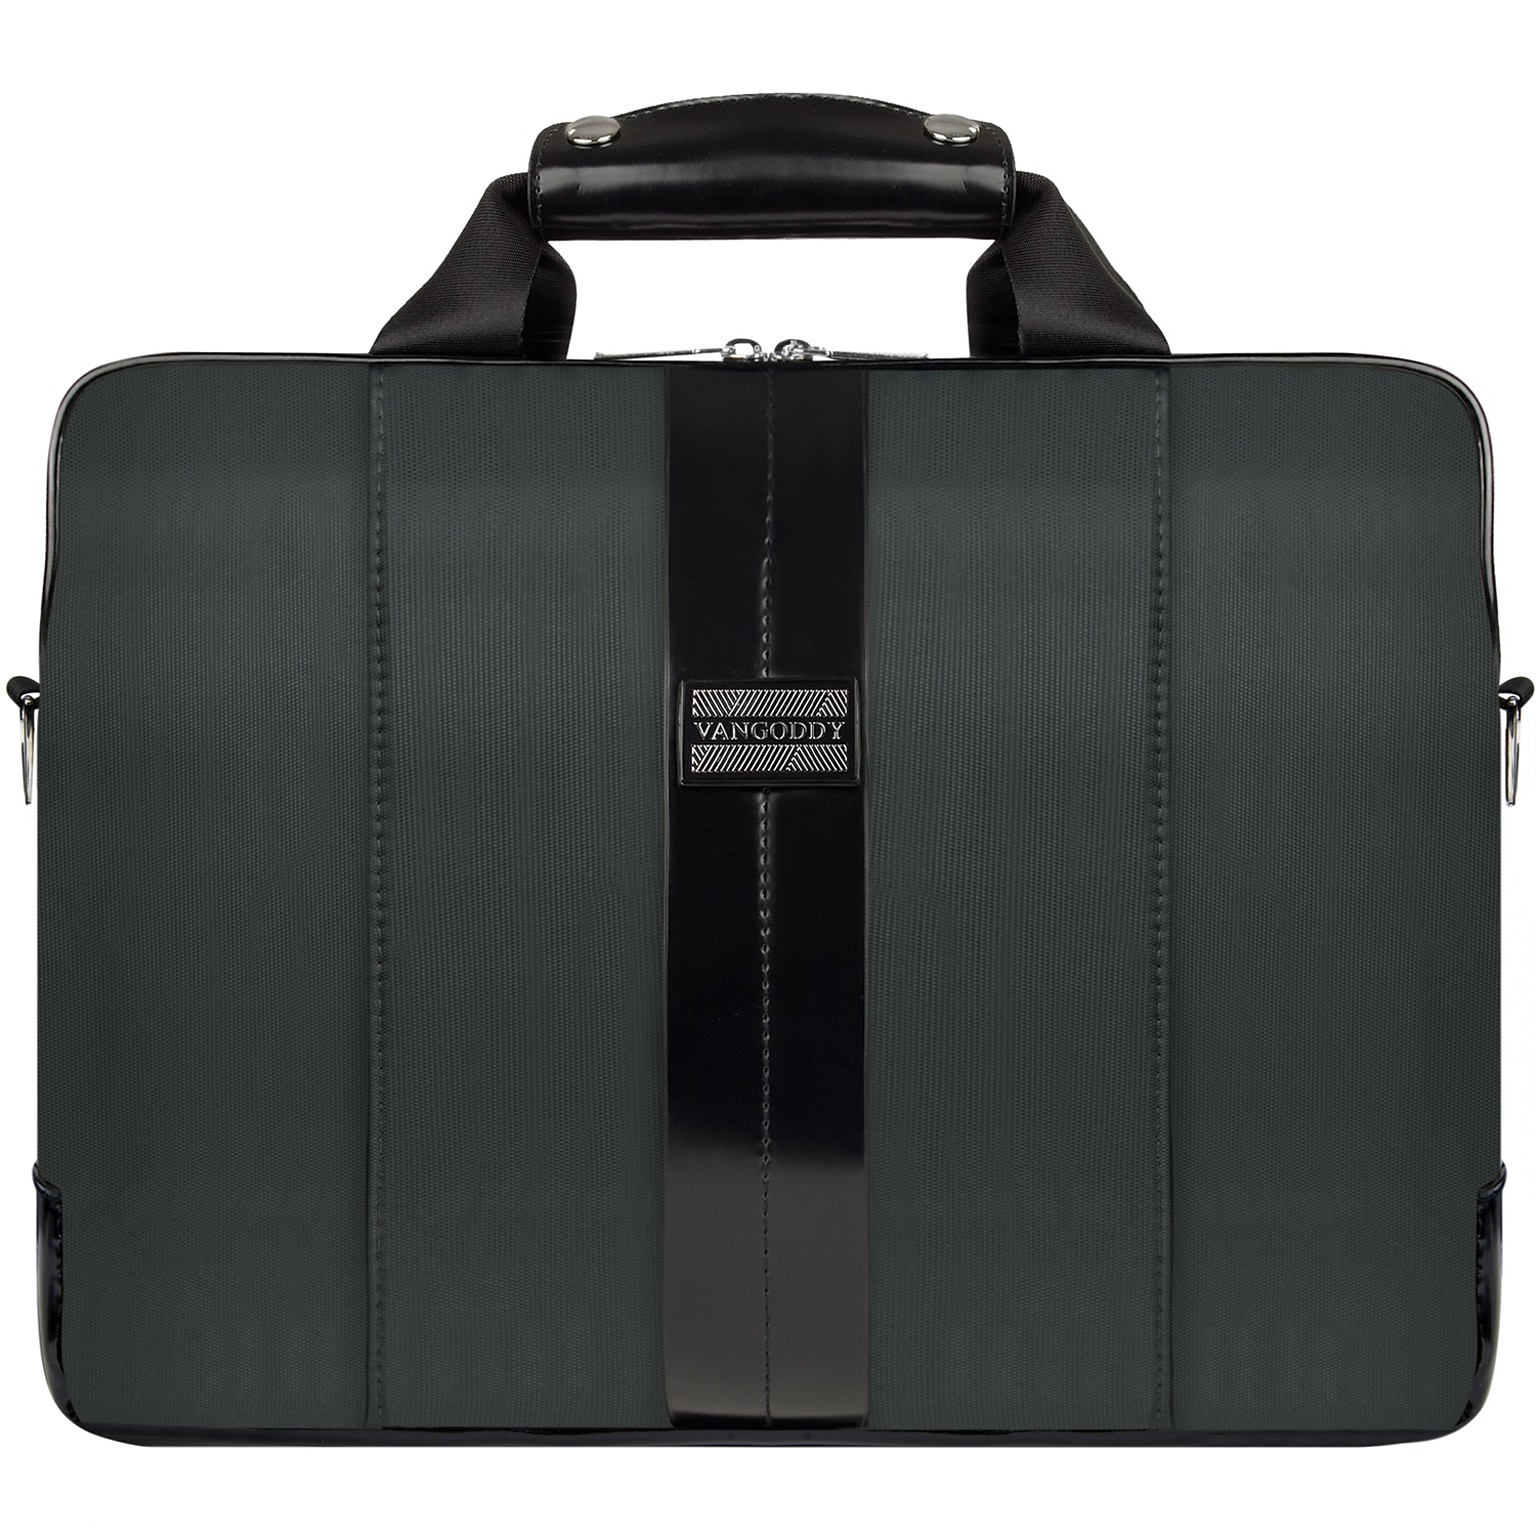 Vangoddy Melissa Shoulder Bag Fits up to 13 Notebook Gray/Black